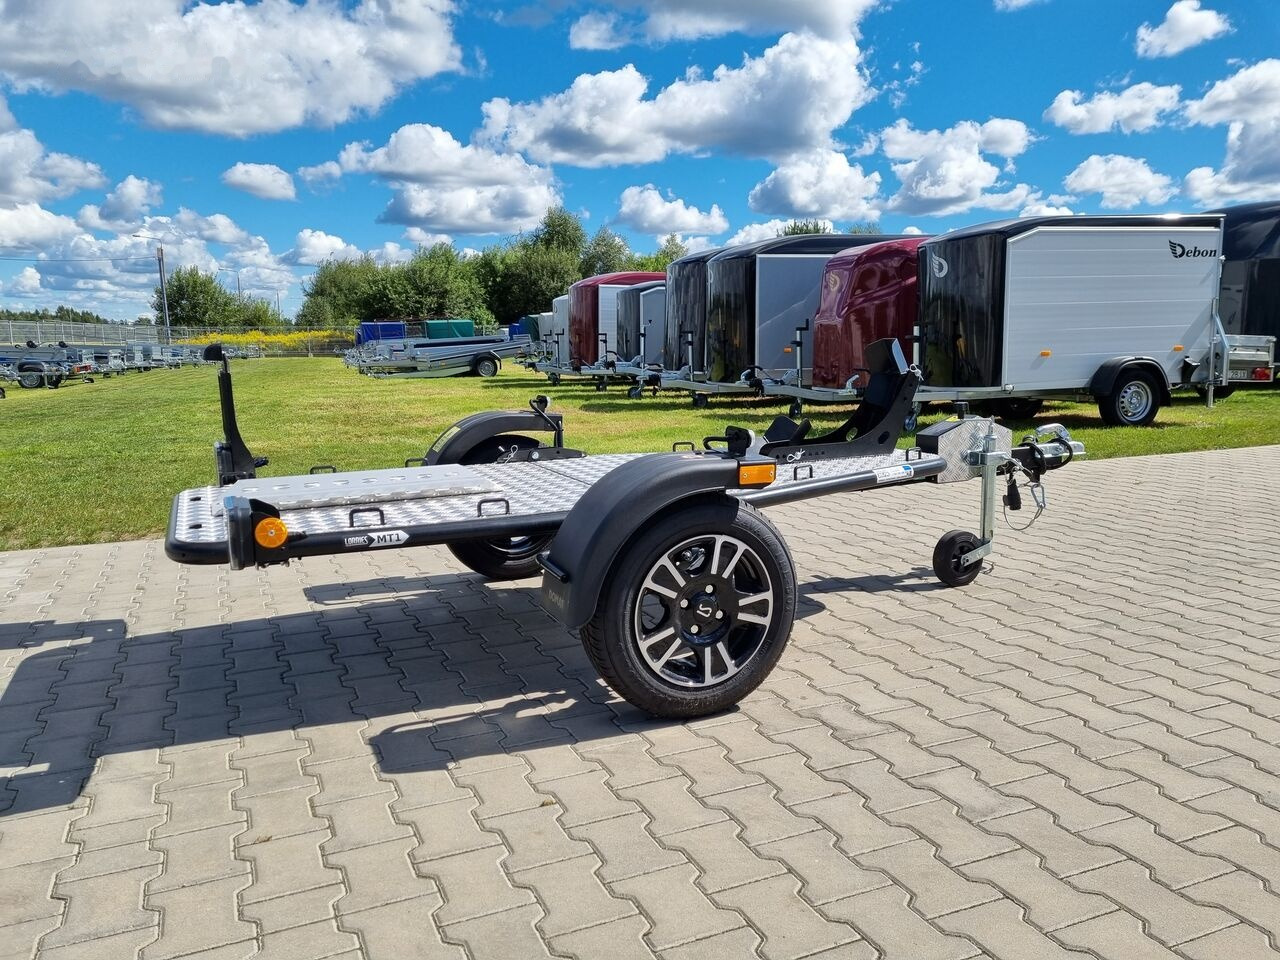 Lorries MT-1 alloy wheels, trailer for 1 motorcycle, aluminiowe felgi - MC-släp: bild 5